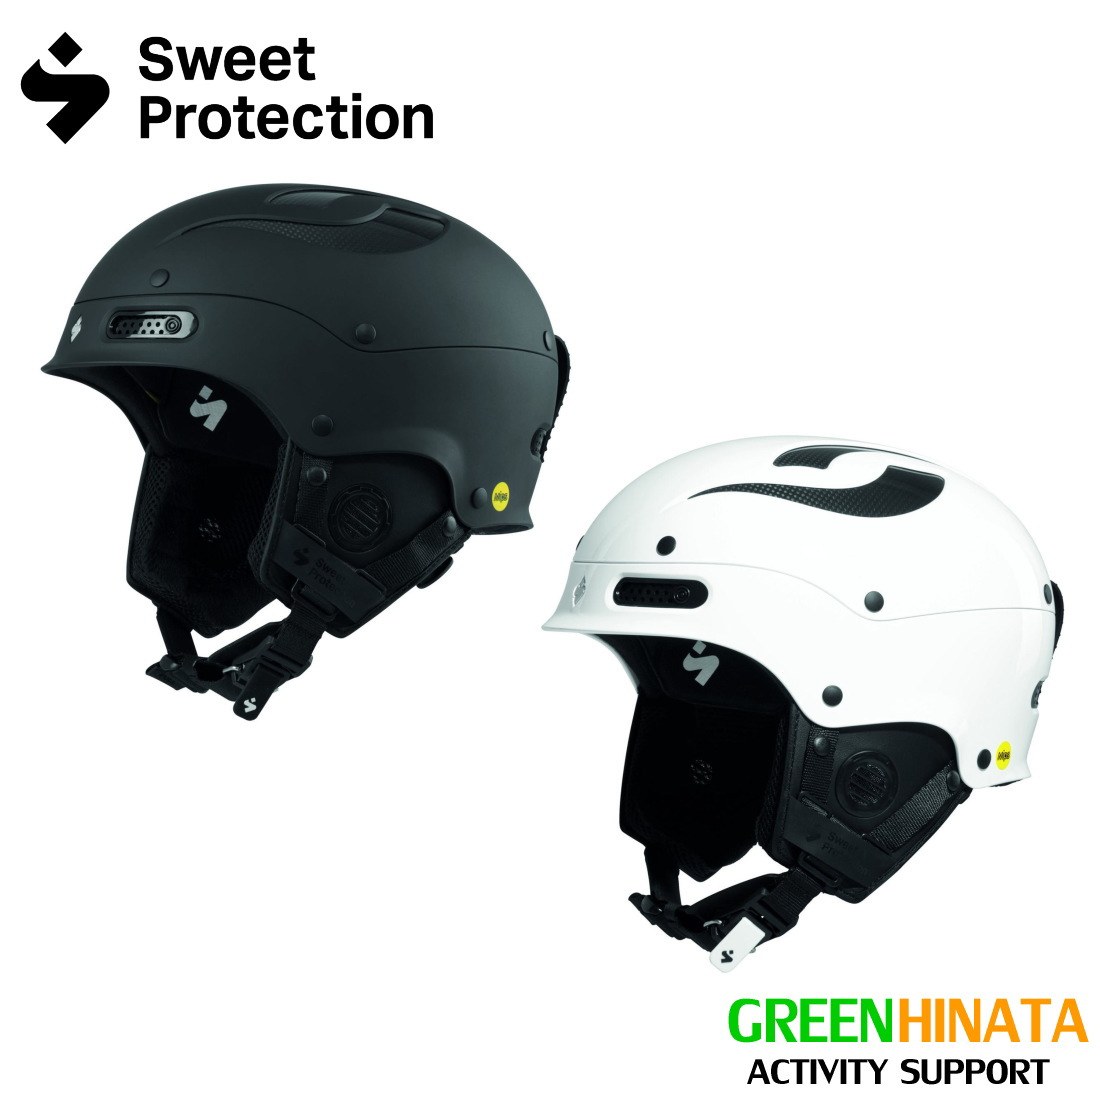 【国内正規品】 スウィートプロテクション トゥルーパー II スキー スノーボード ヘルメット Sweet Protection Trooper II MIPS スイート プロテクション 2021MODEL